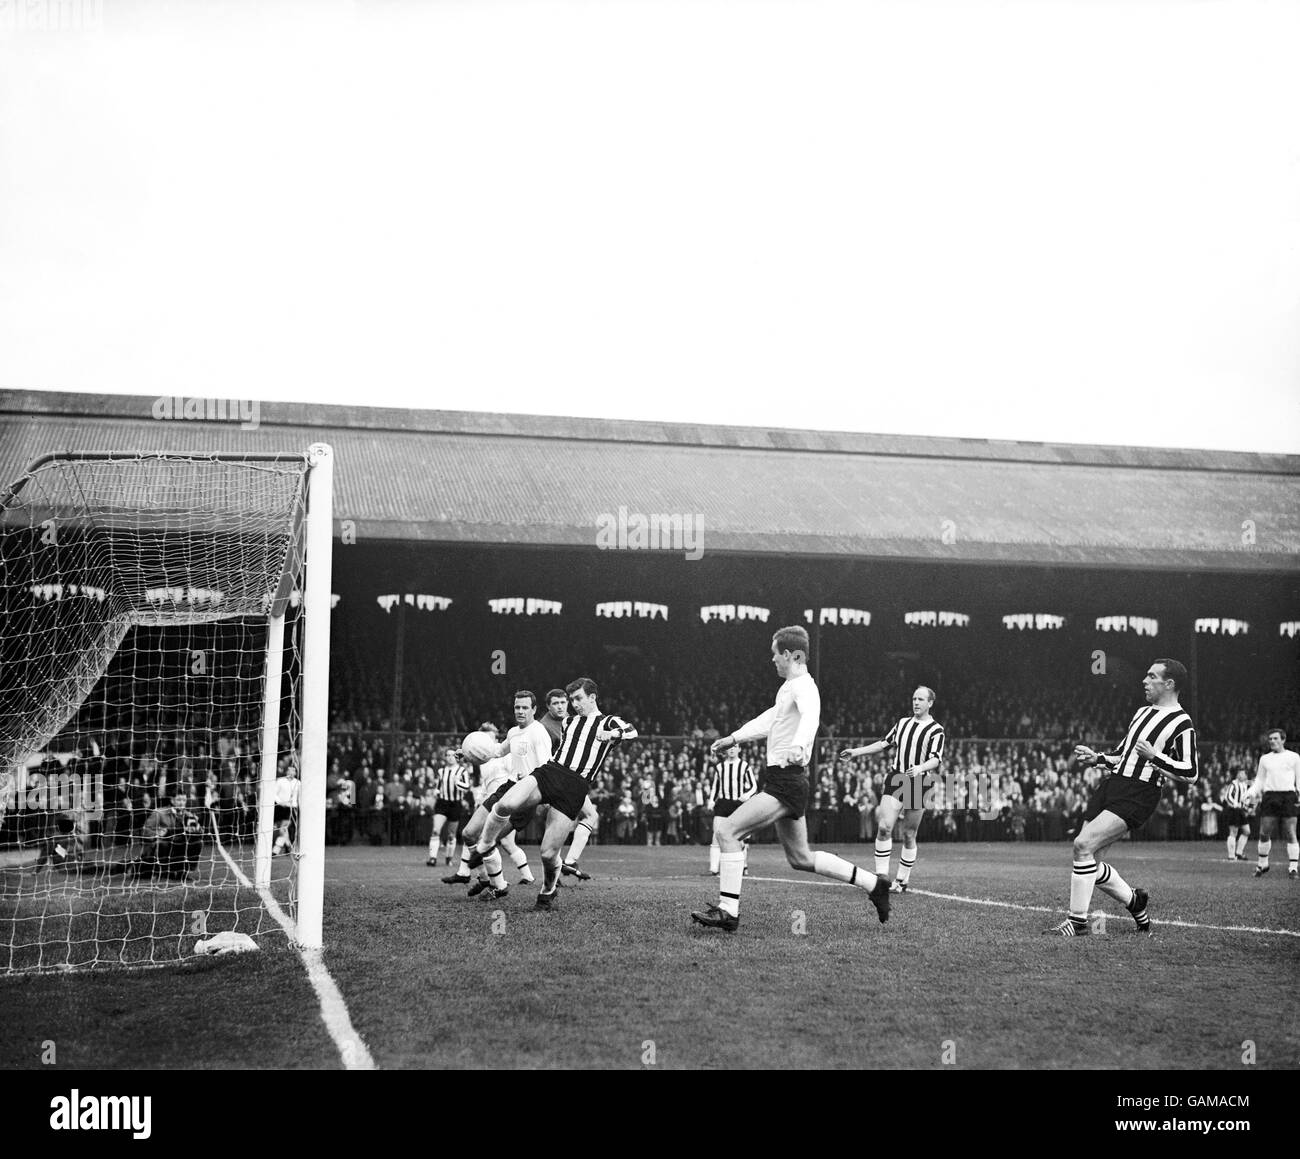 David Craig (terzo l) di Newcastle United allontana la palla dal suo obiettivo, mentre Graham Leggatt (l) di Fulham e John Dempsey (quarto l) cercano di applicare il tocco finale. Guardando sopra ci sono Dave Hollins di Newcastle (secondo l) e Jim Iley (secondo r) Foto Stock